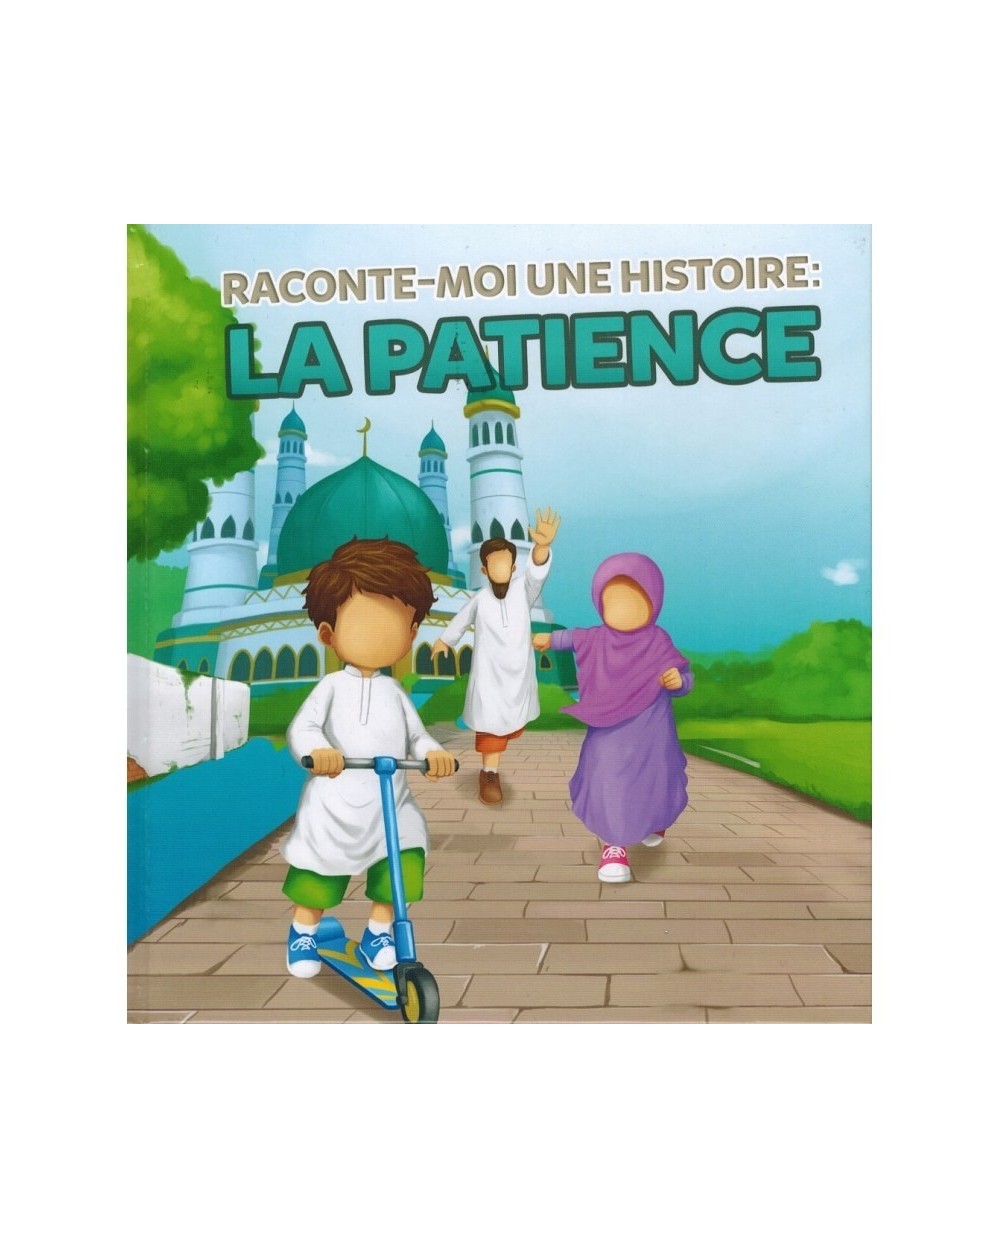 Raconte moi une histoire - La patience - Muslim Kid